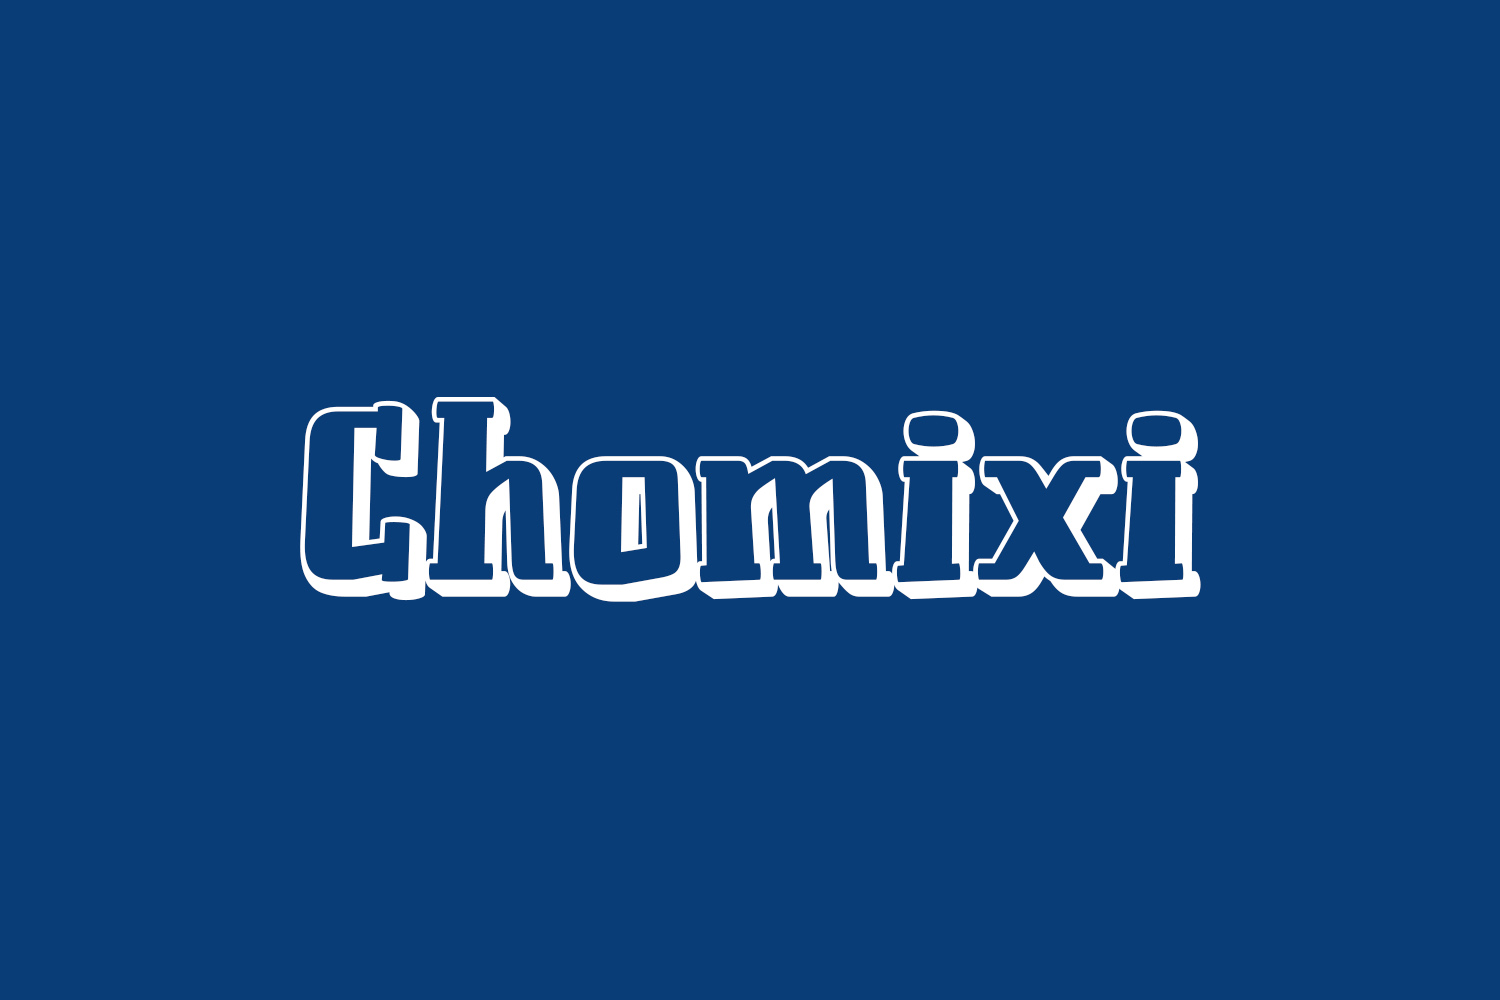 Chomixi Free Font